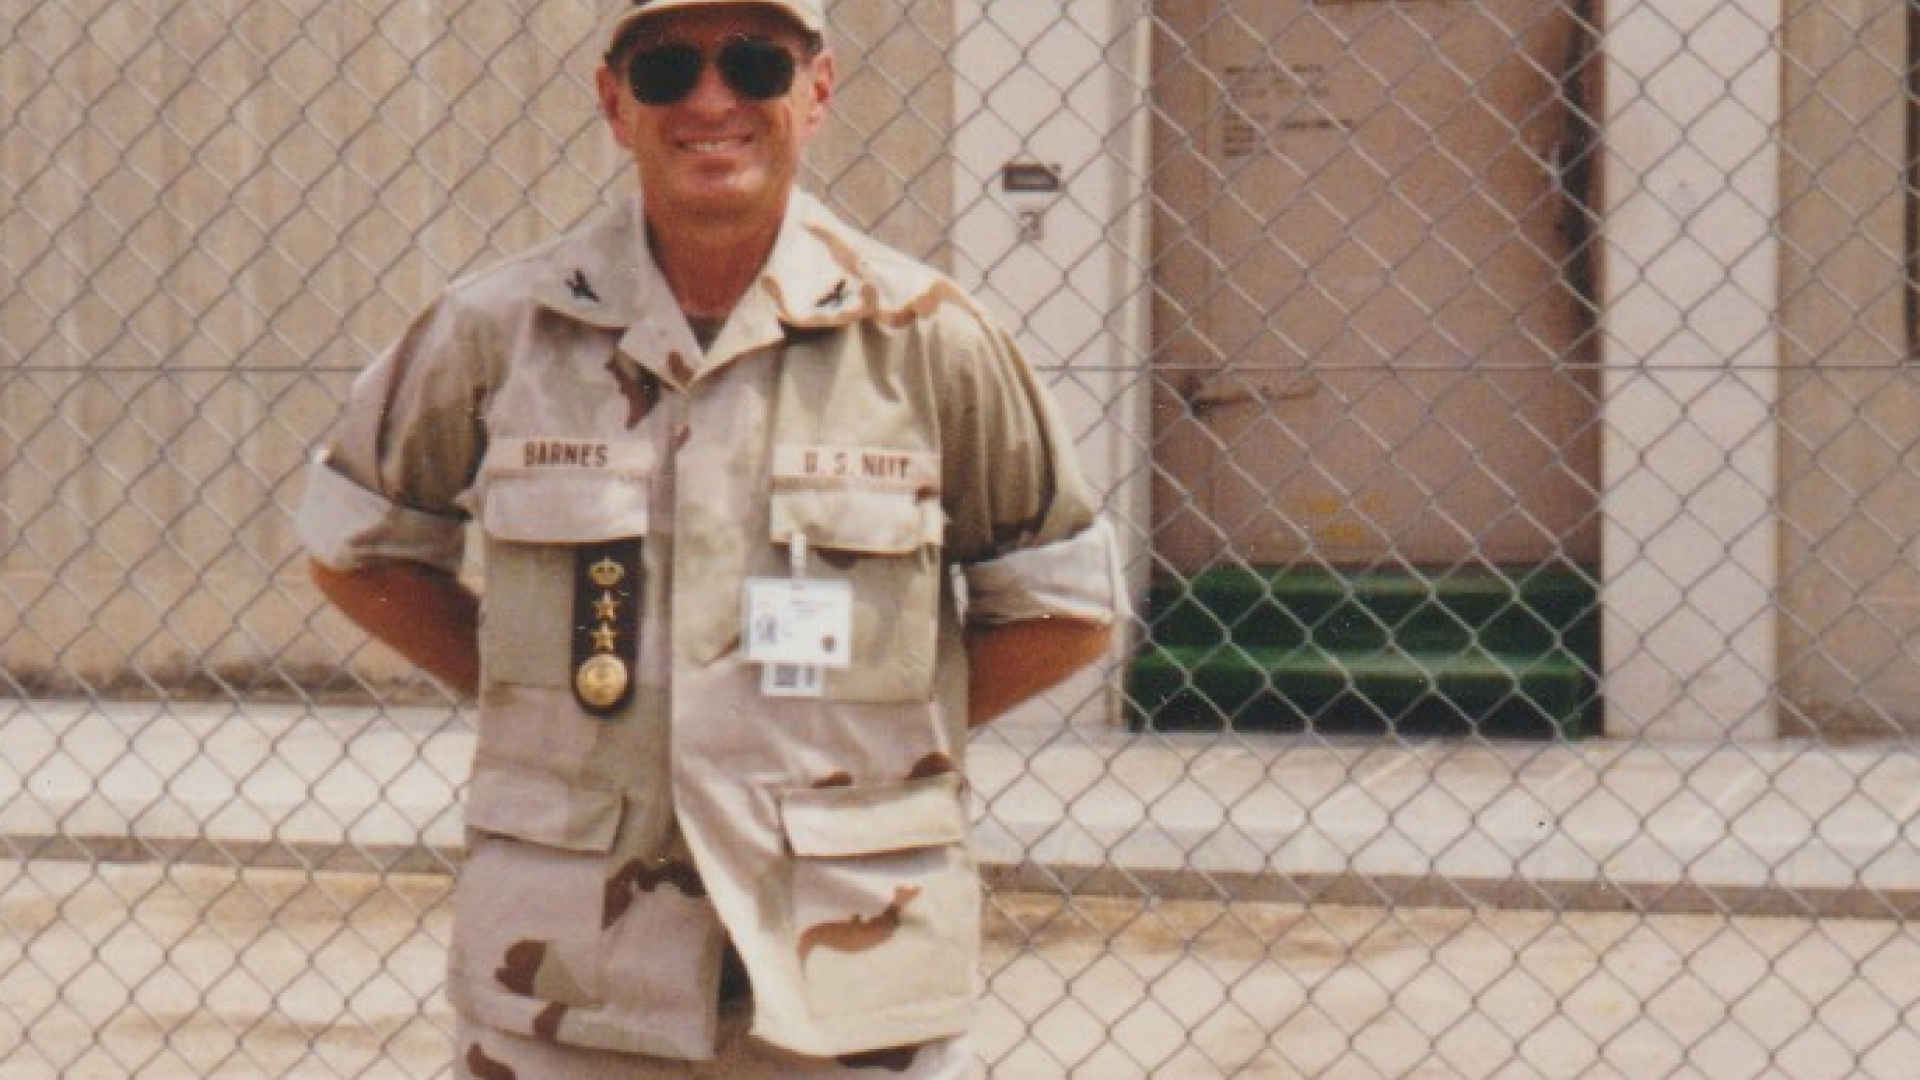 Captain Barnes, USNR, Riyadh, Saudi Arabia